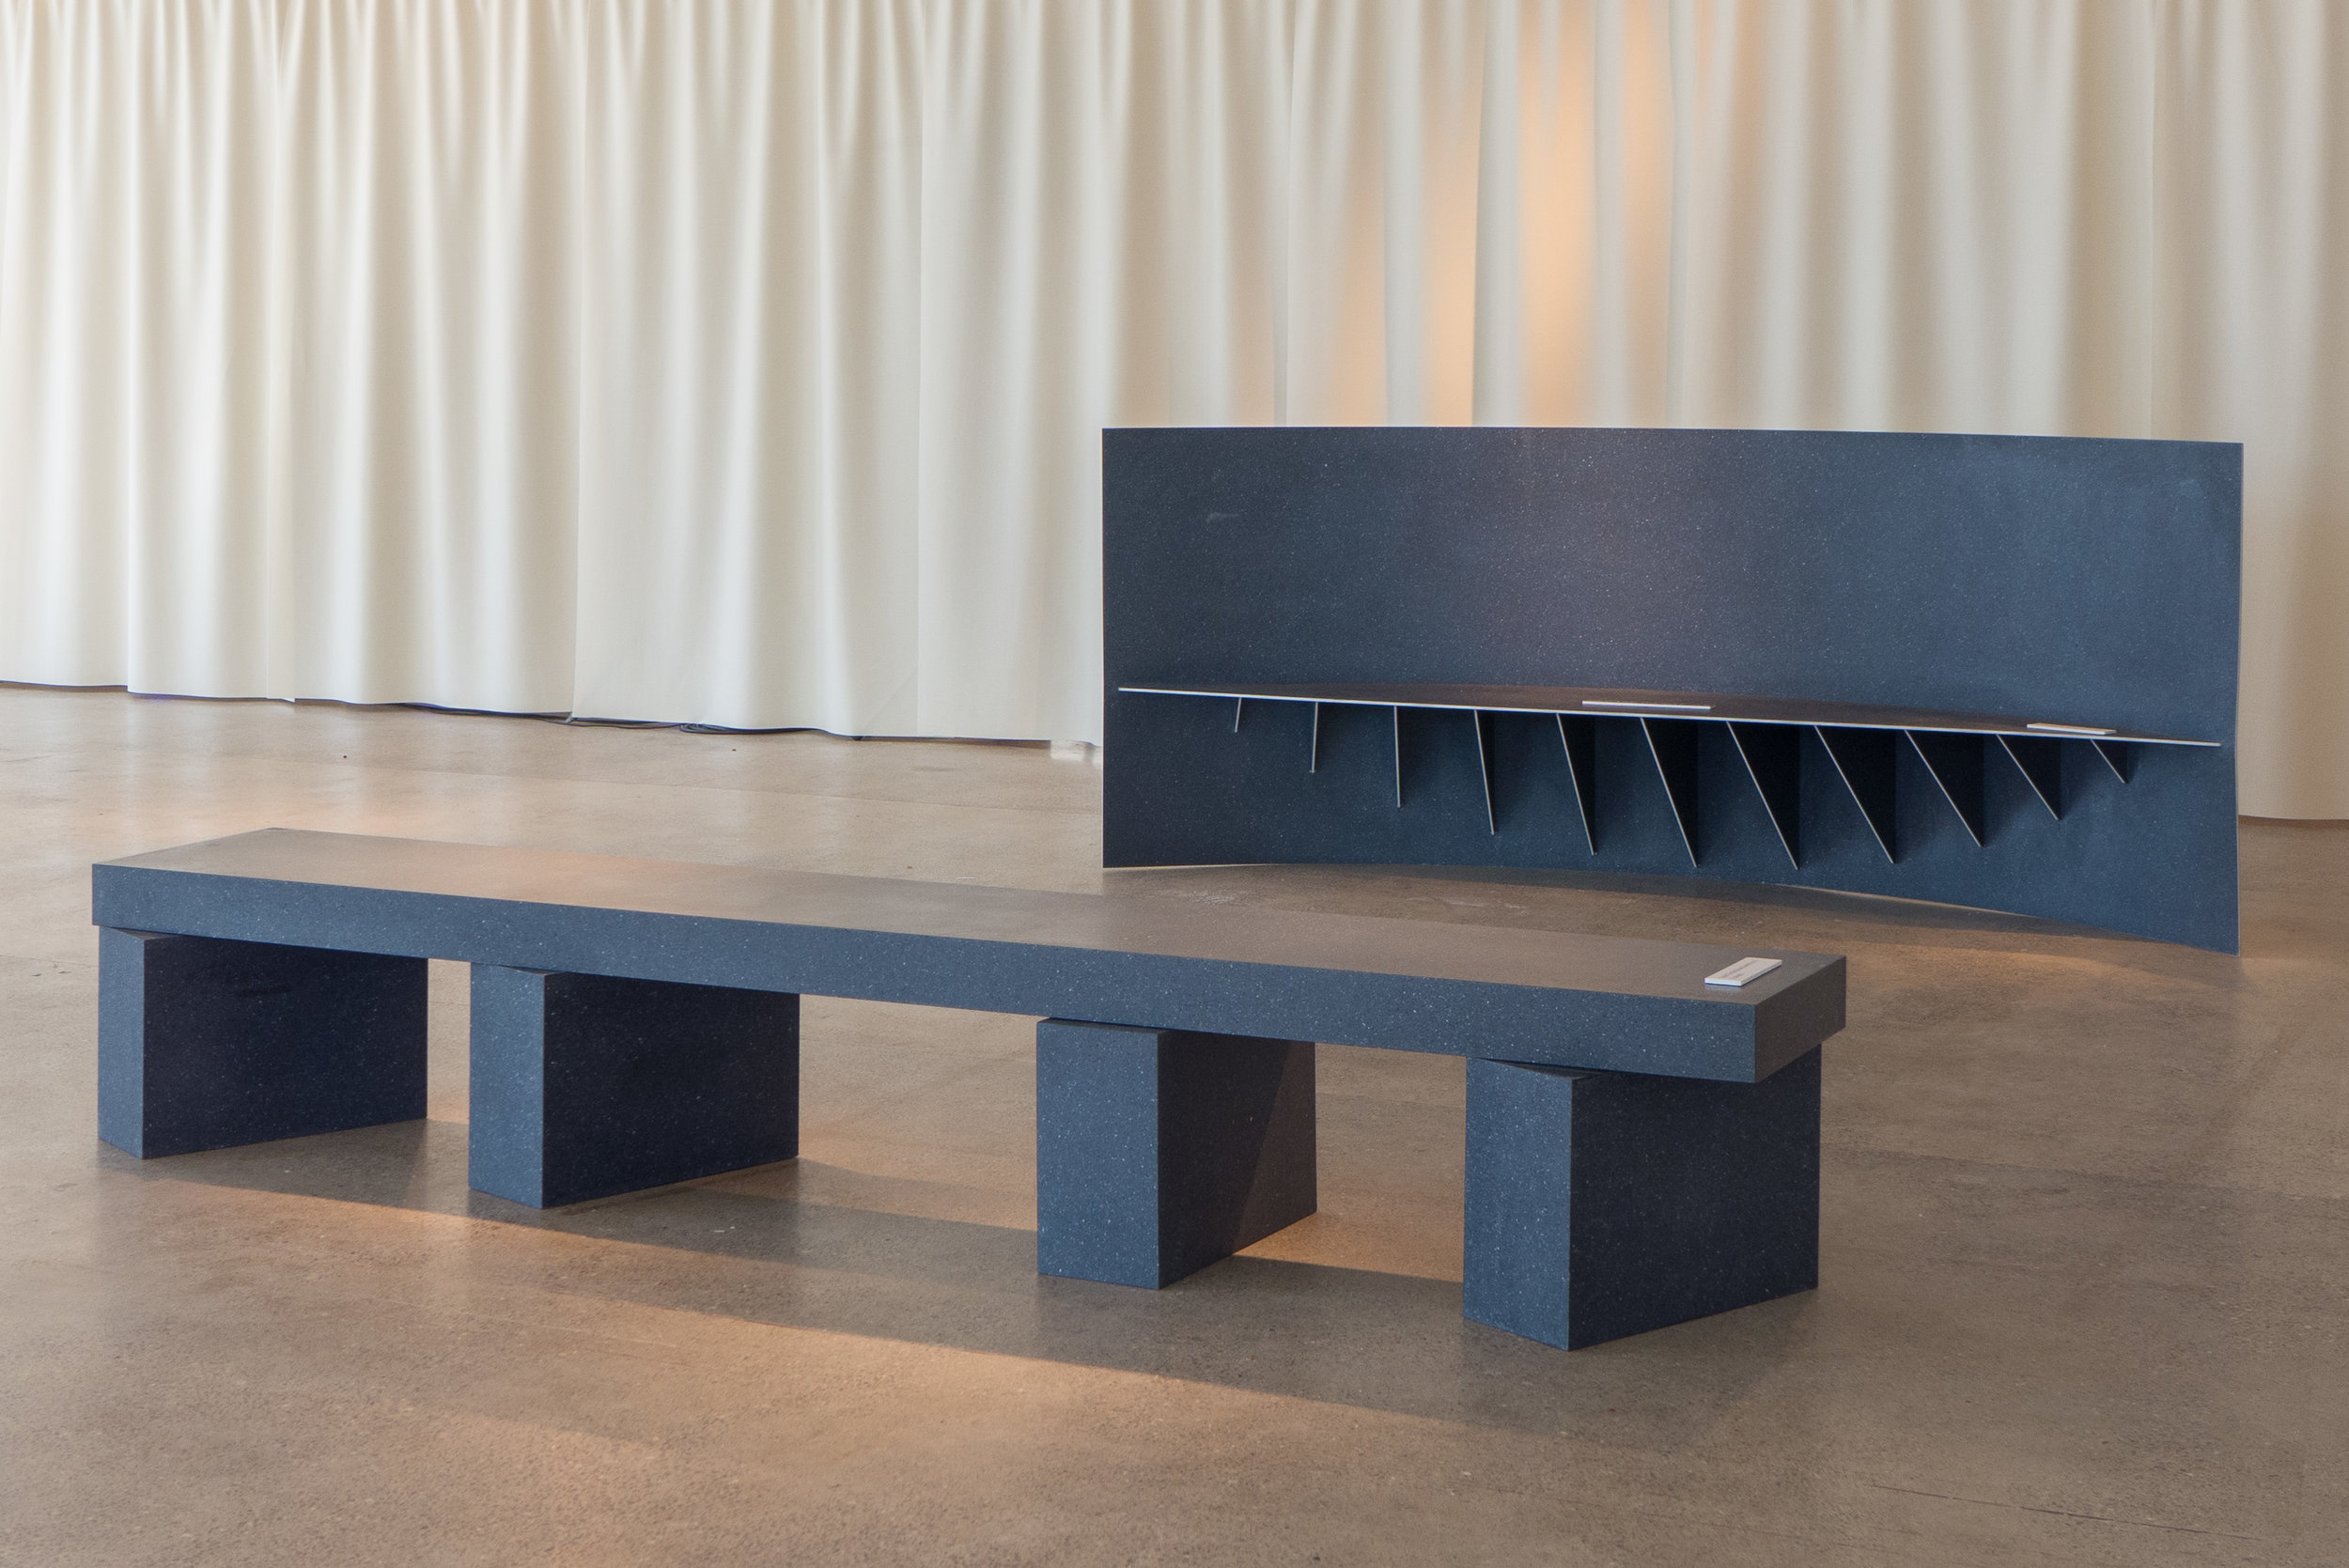 Max Lamb Furniture Danish Design Review